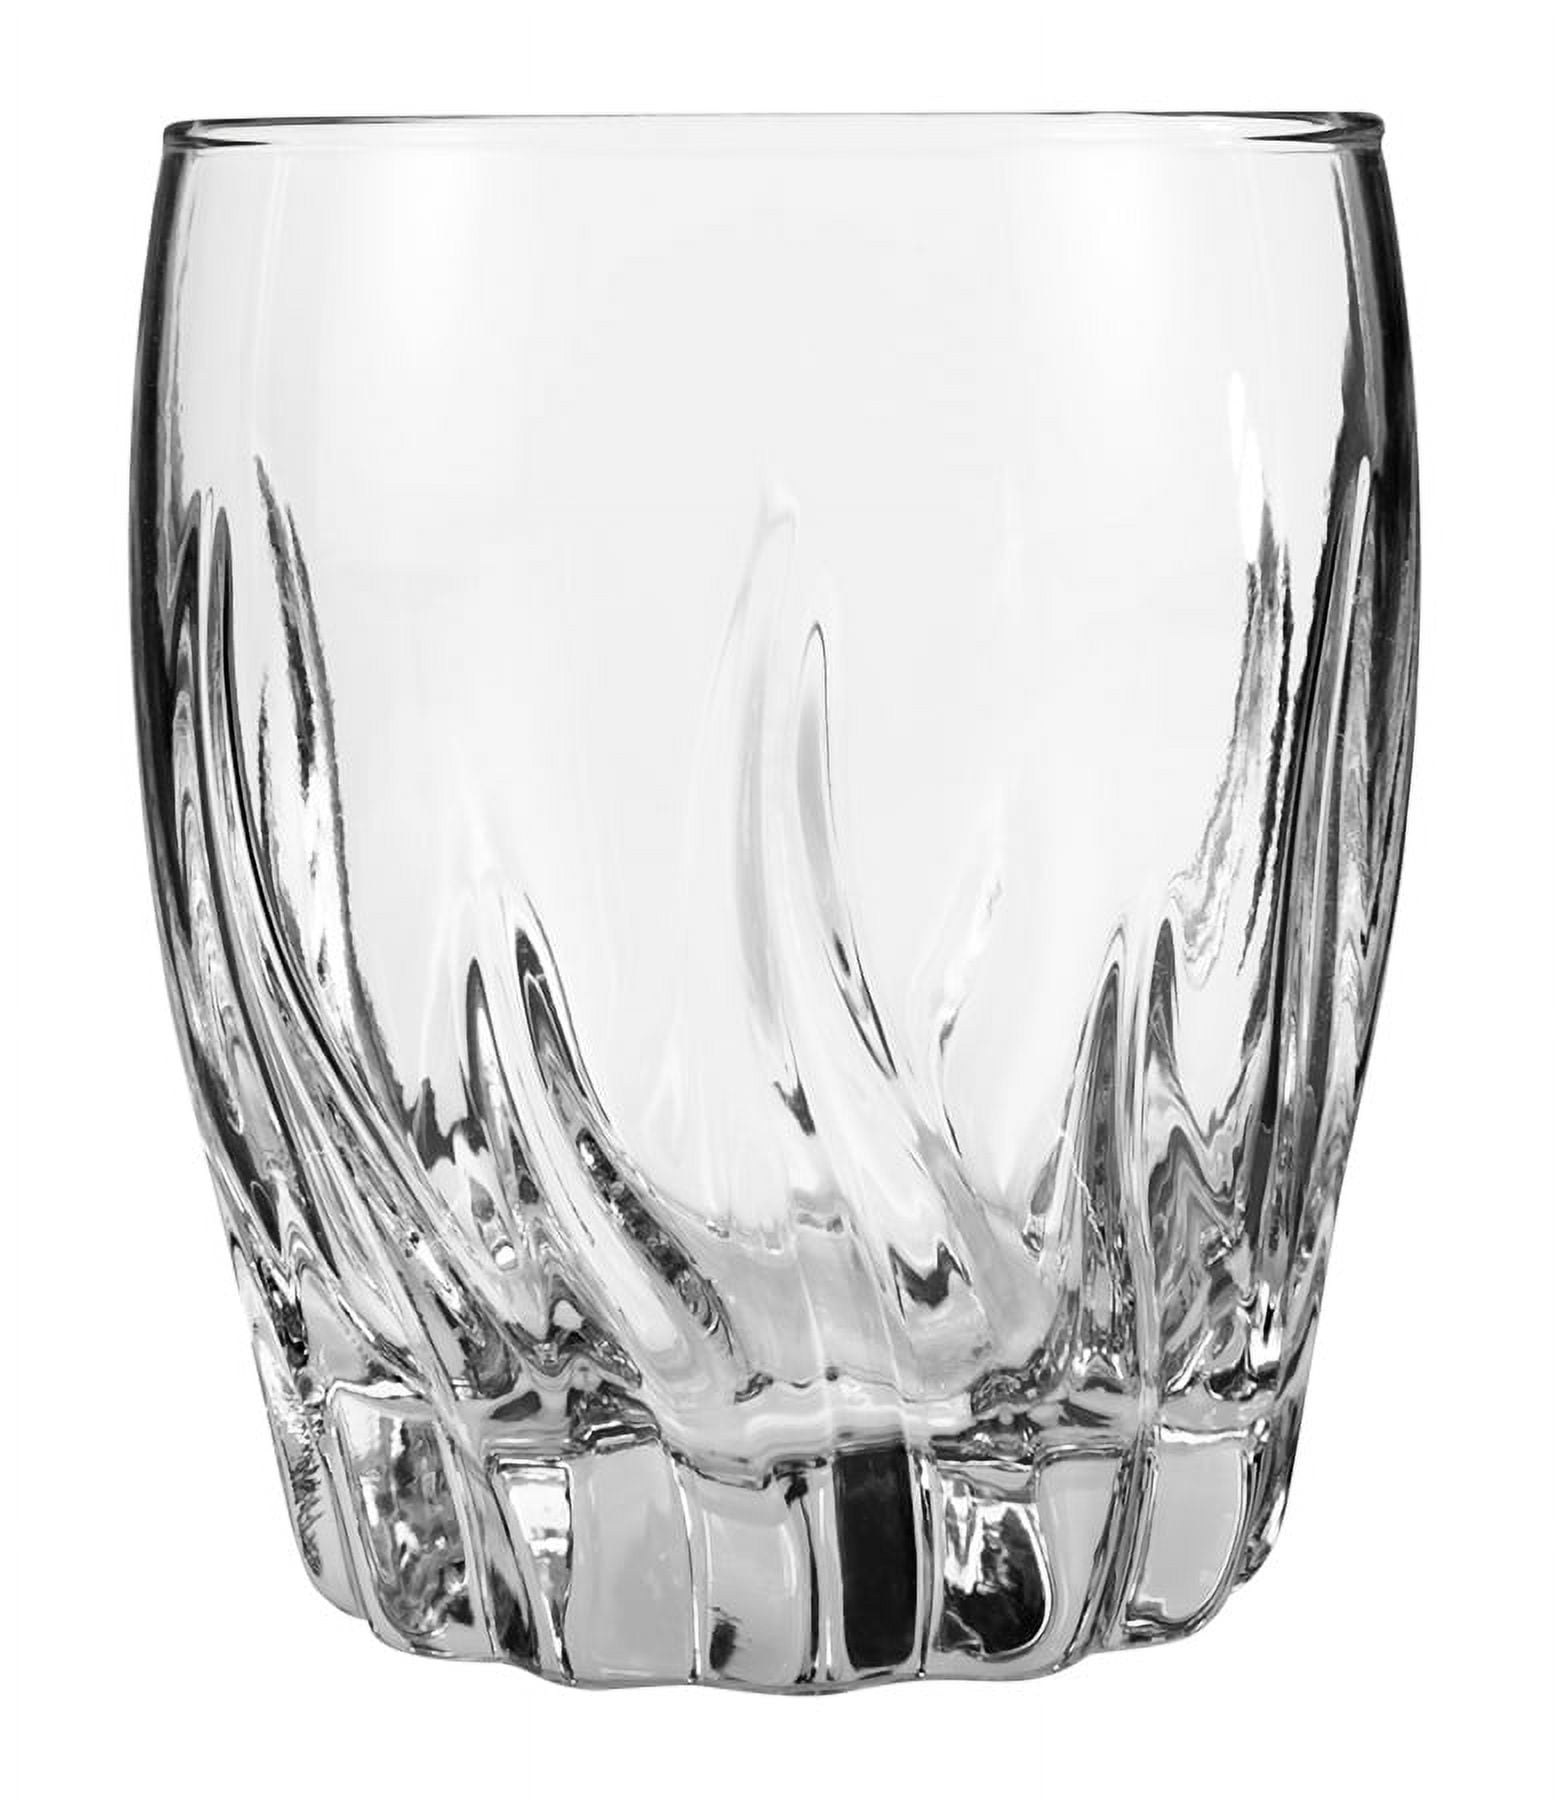 Drinking glasses, Water glasses set of 12 - Grande-S, 190ml